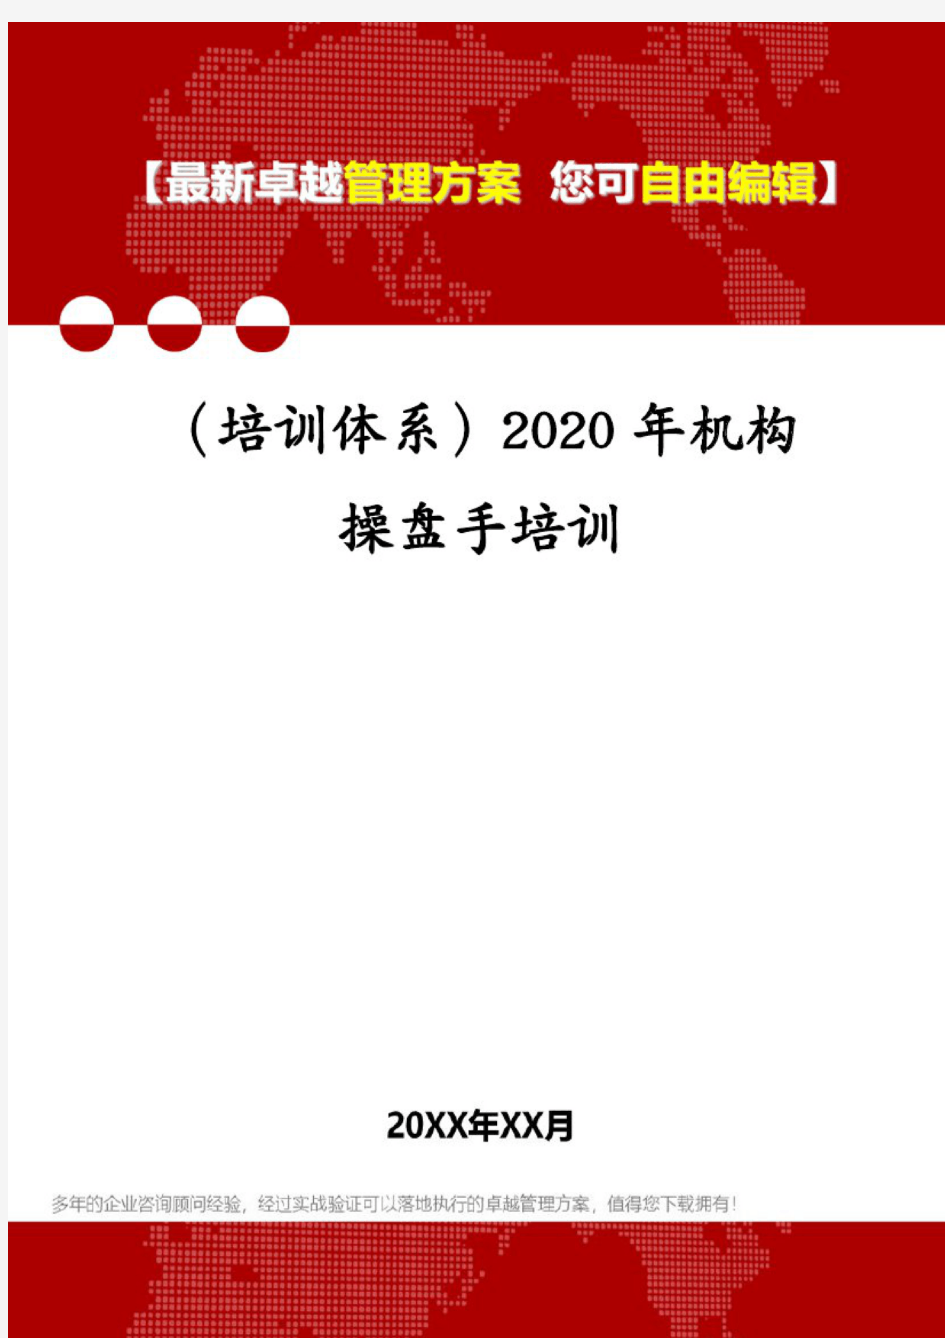 (培训体系)2020年机构操盘手培训